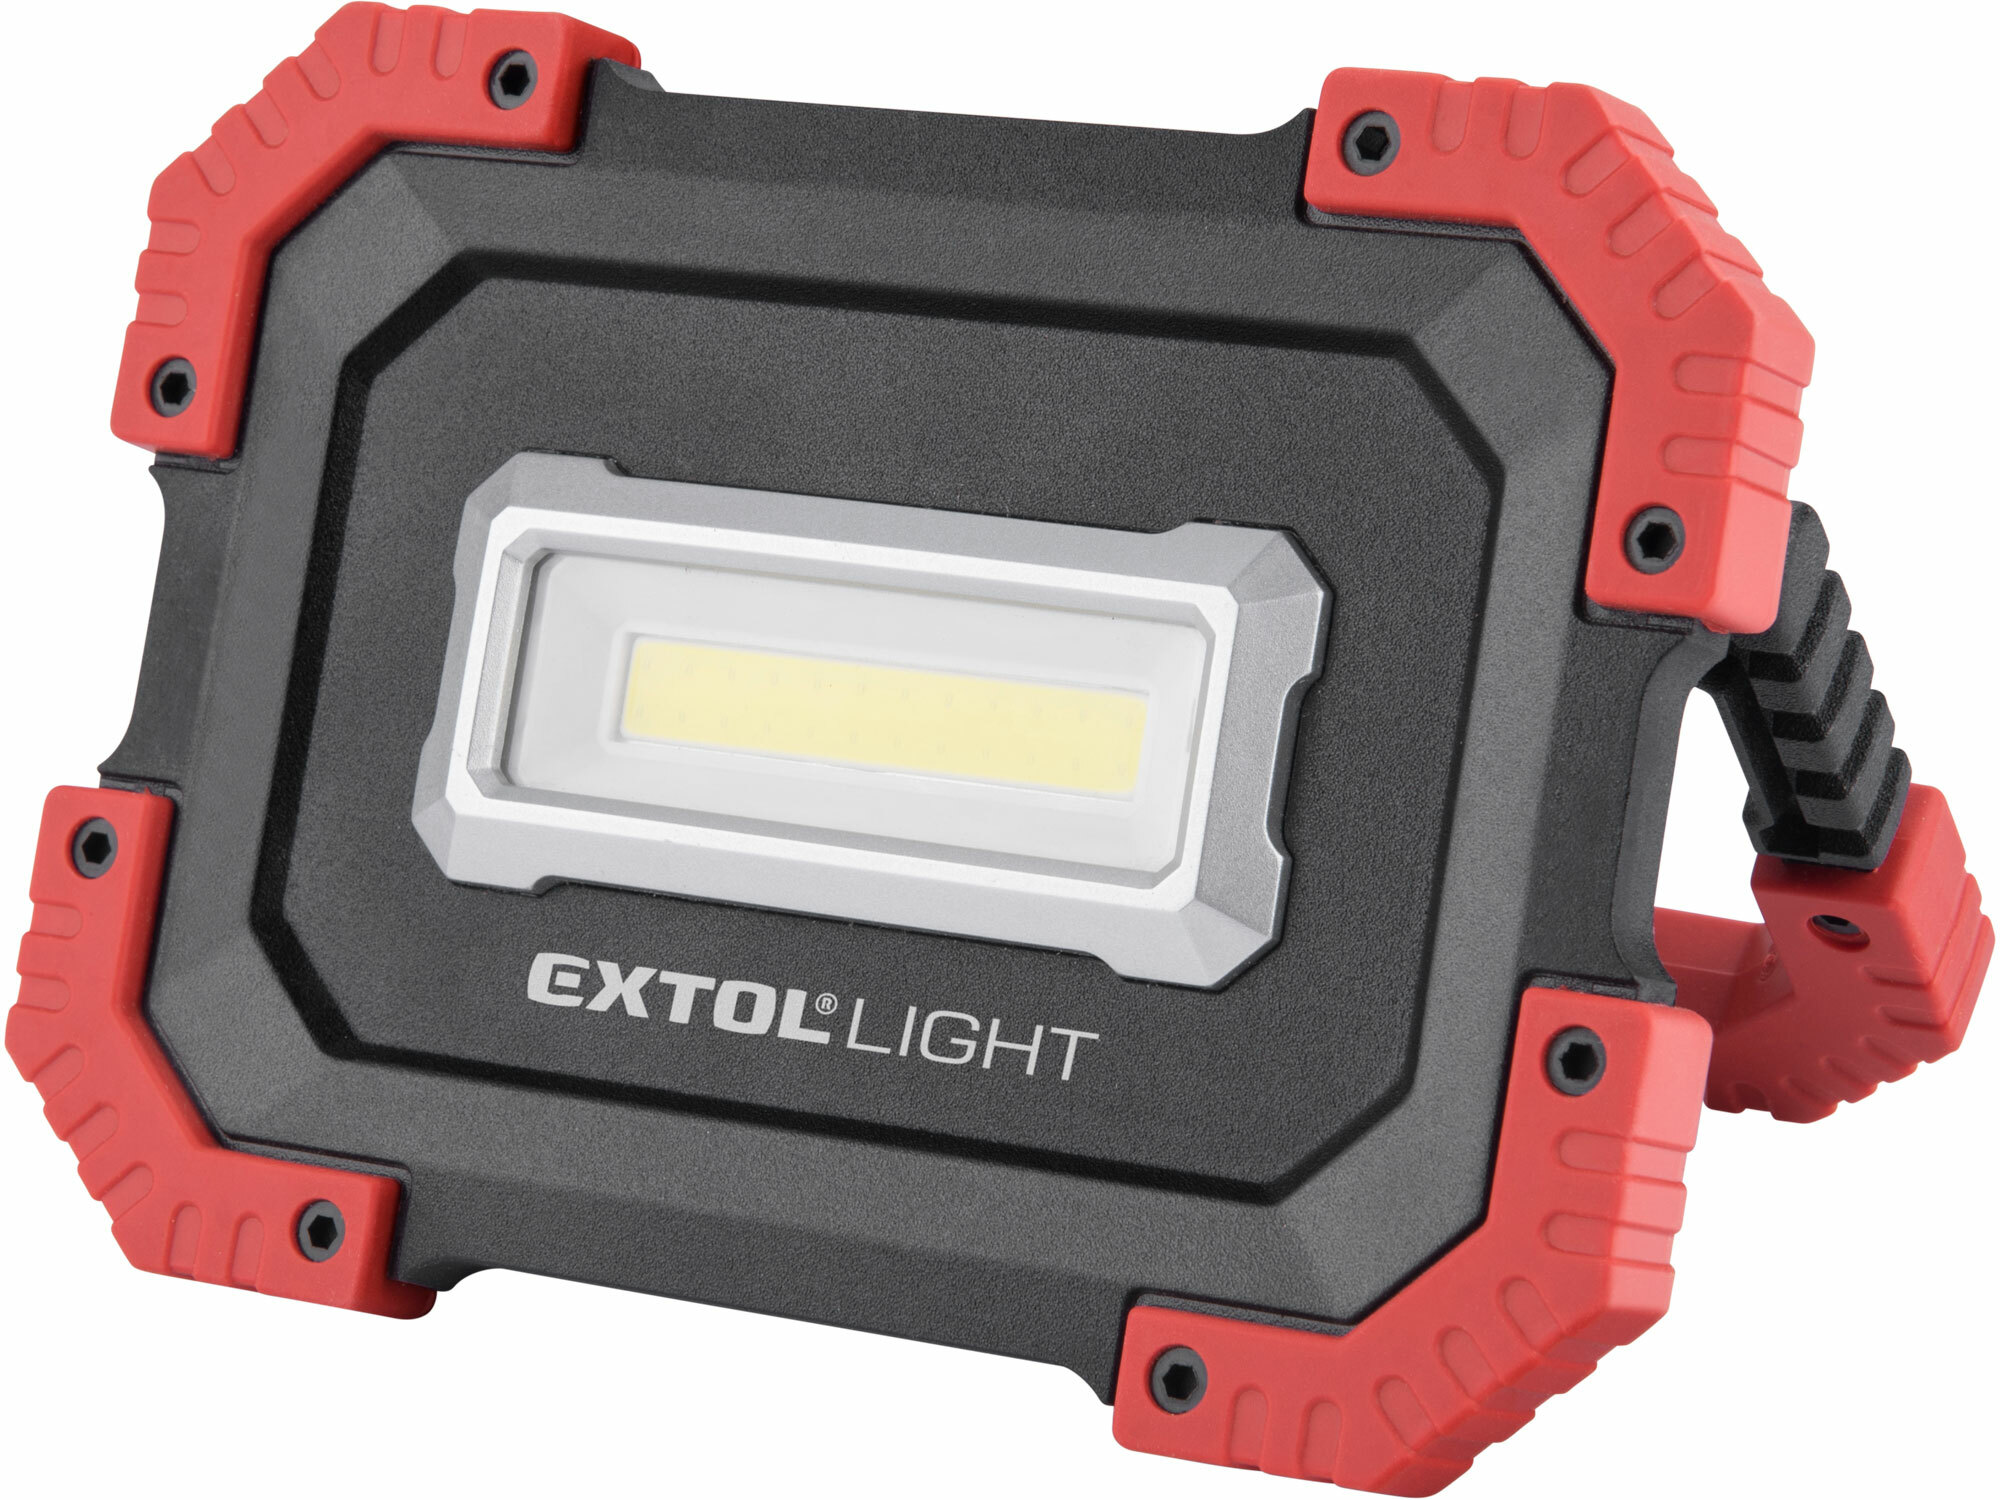 Svietidlo LED nabíjateľné, 10W, 1000lm, 3,7V/4,4Ah Li-ion, 380g, EXTOL LIGHT